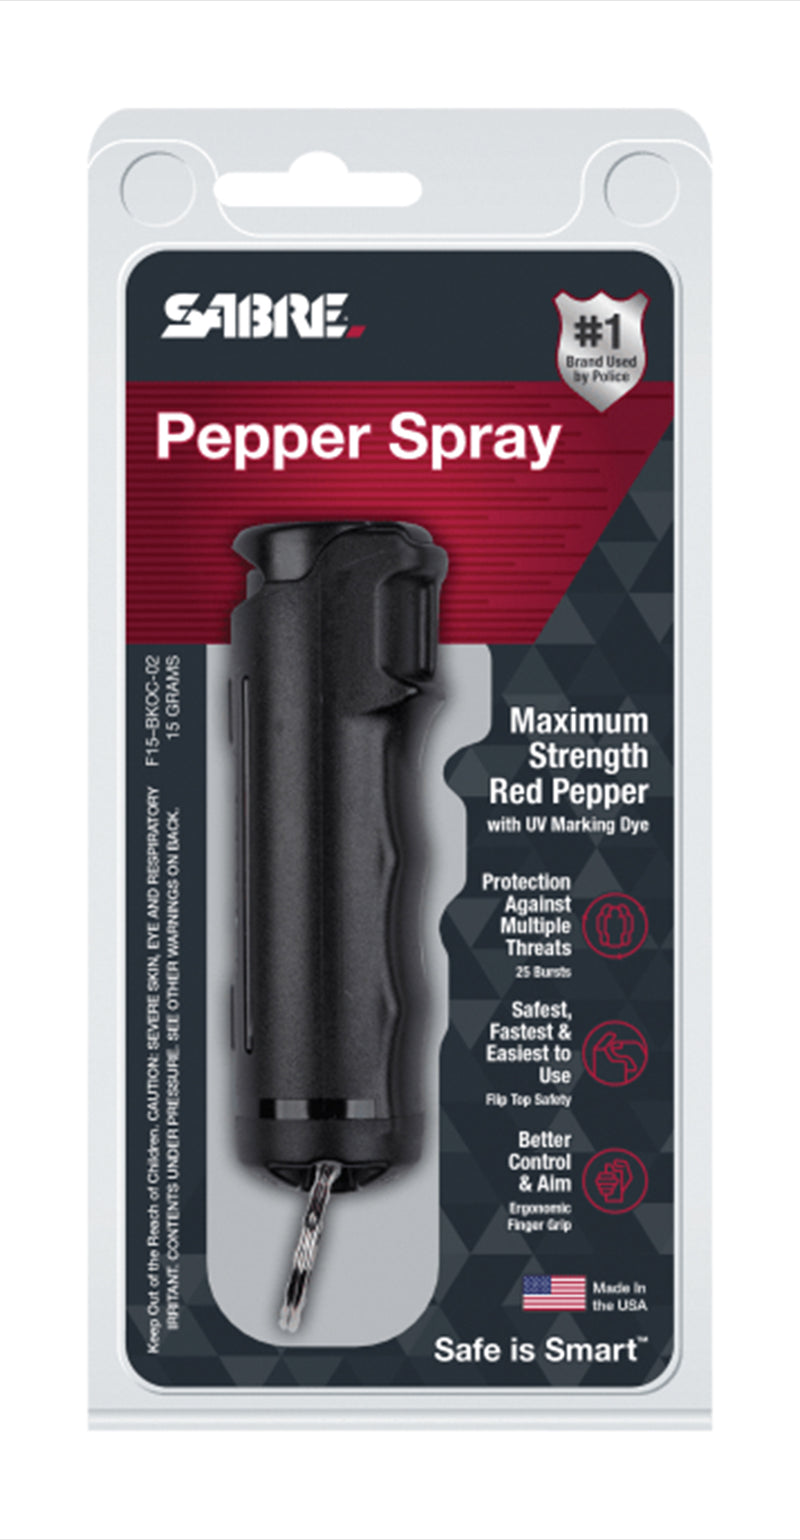 Sabre Pepper Gel With Flip Top & UV Marking Dye